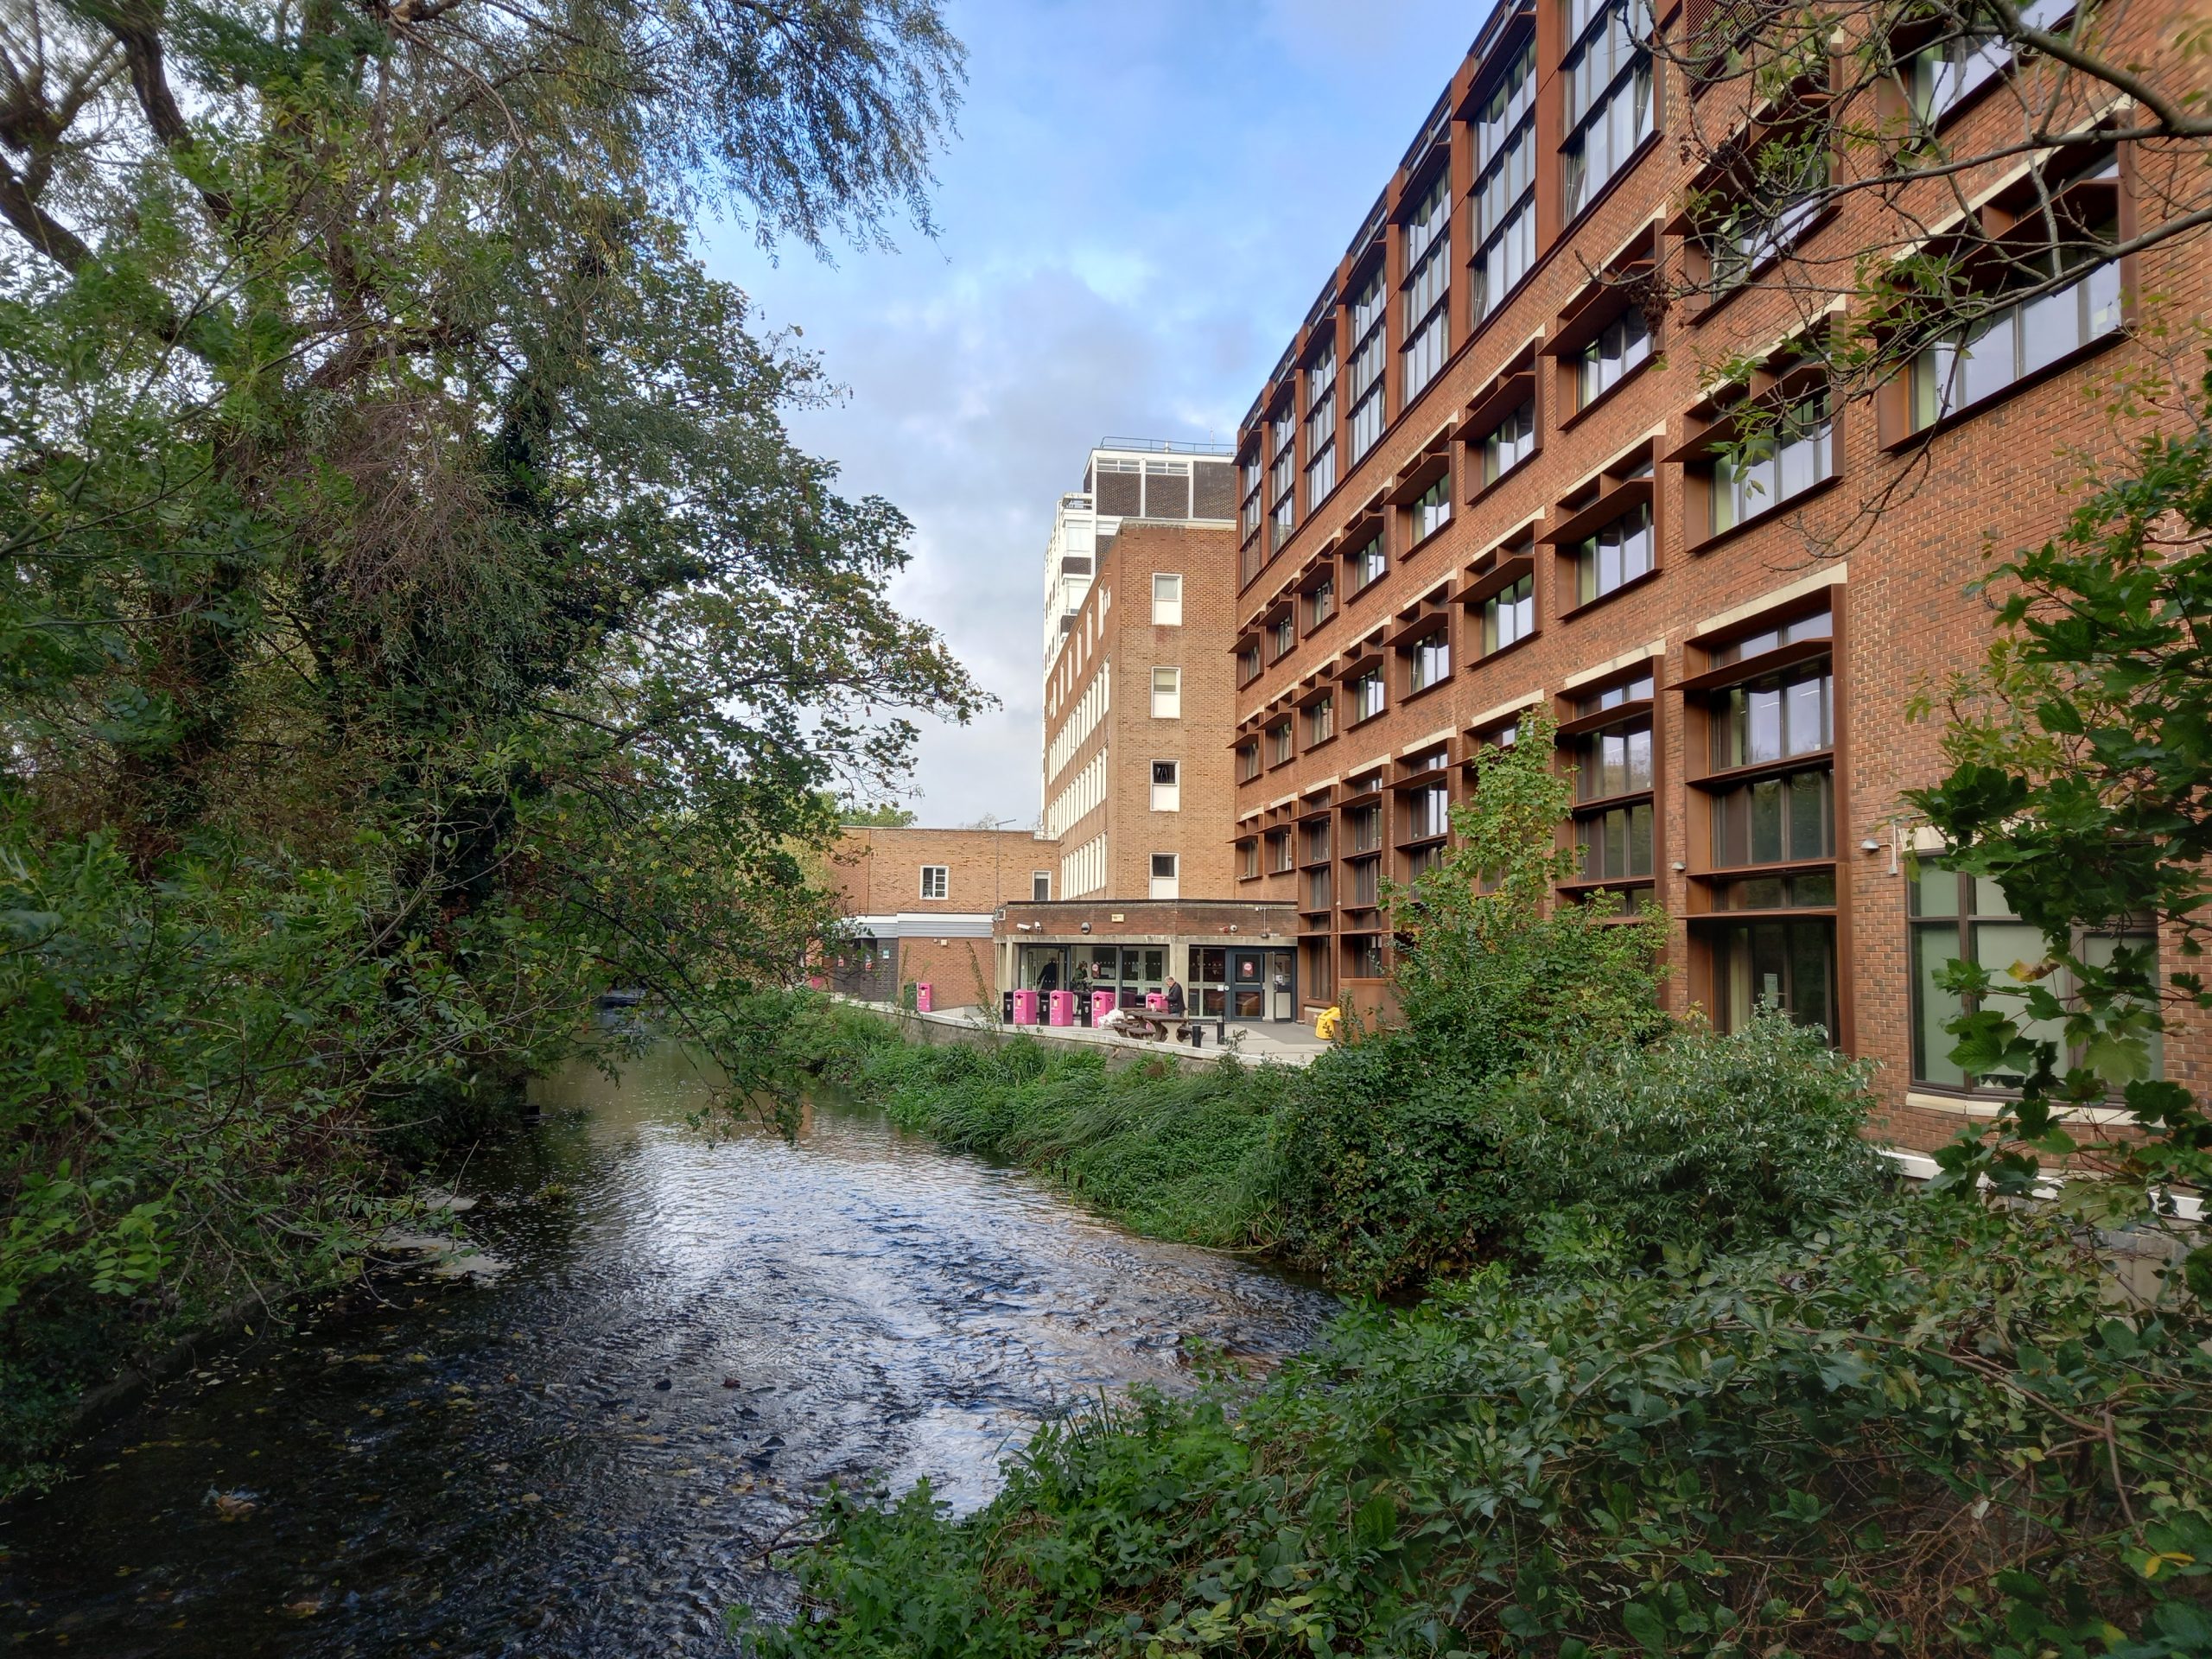 Hogsmill River near Knights Park campus